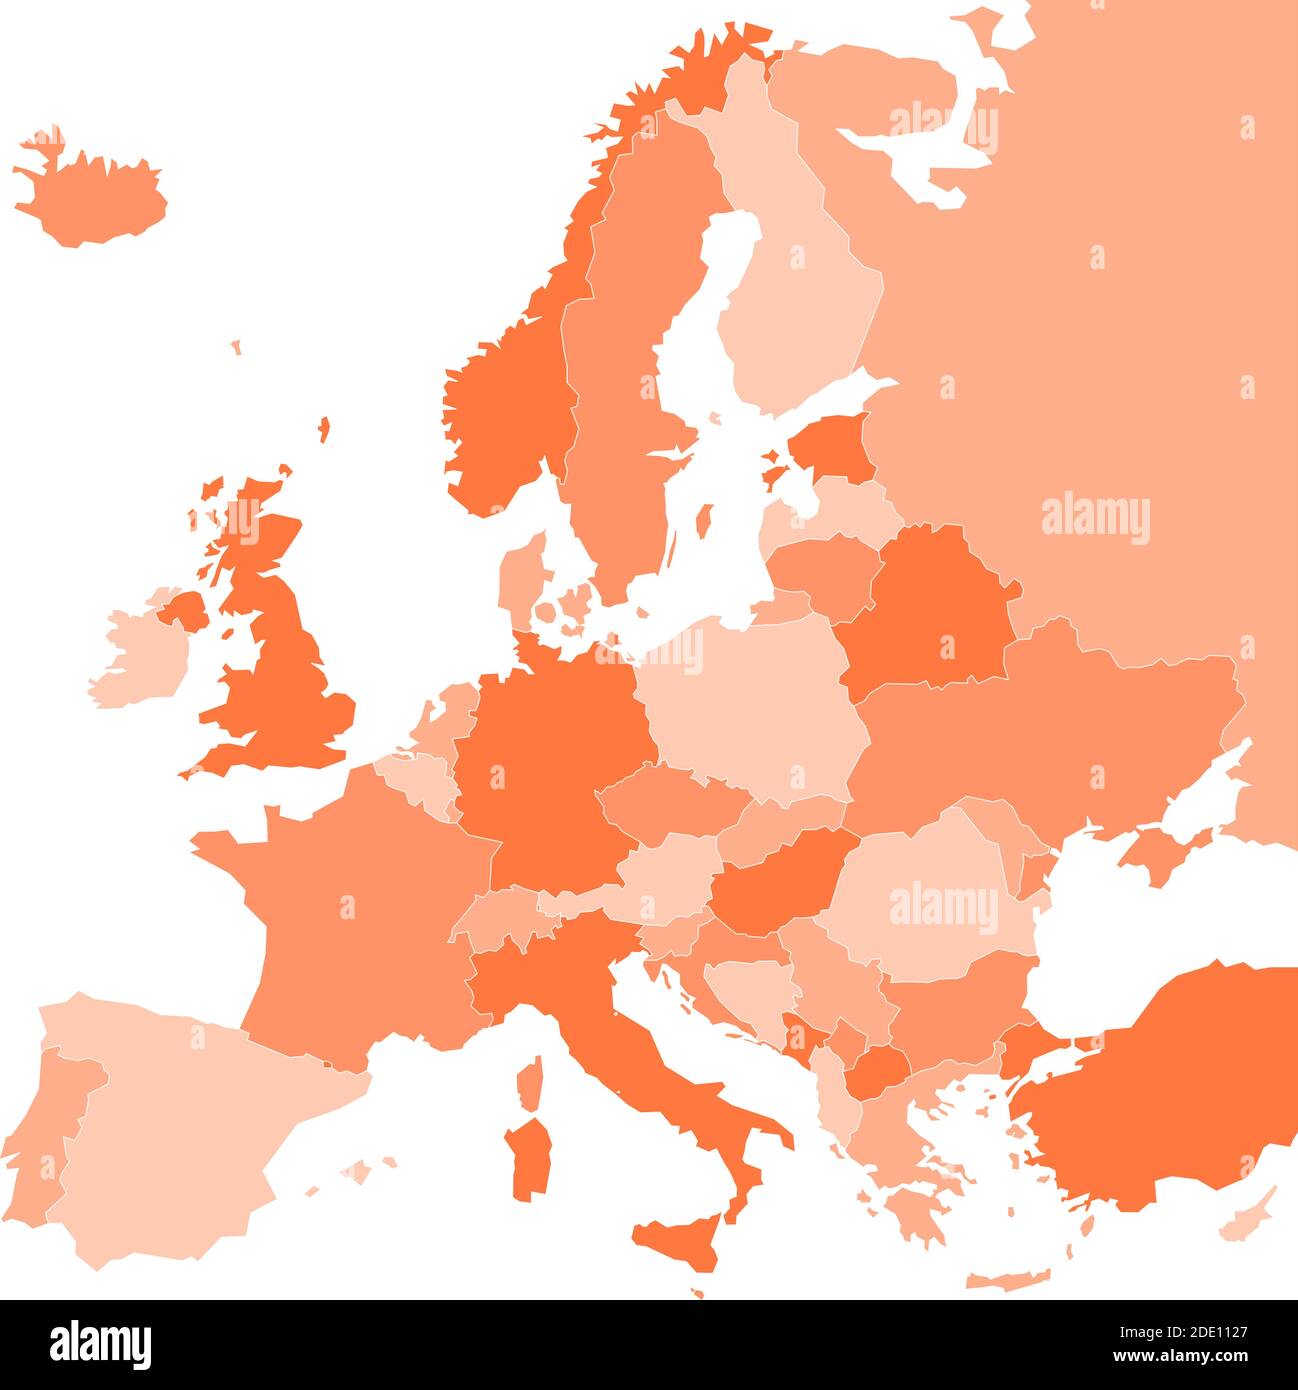 Mappa politica dell'Europa in quattro tonalità di arancio su sfondo bianco. Illustrazione vettoriale. Illustrazione Vettoriale